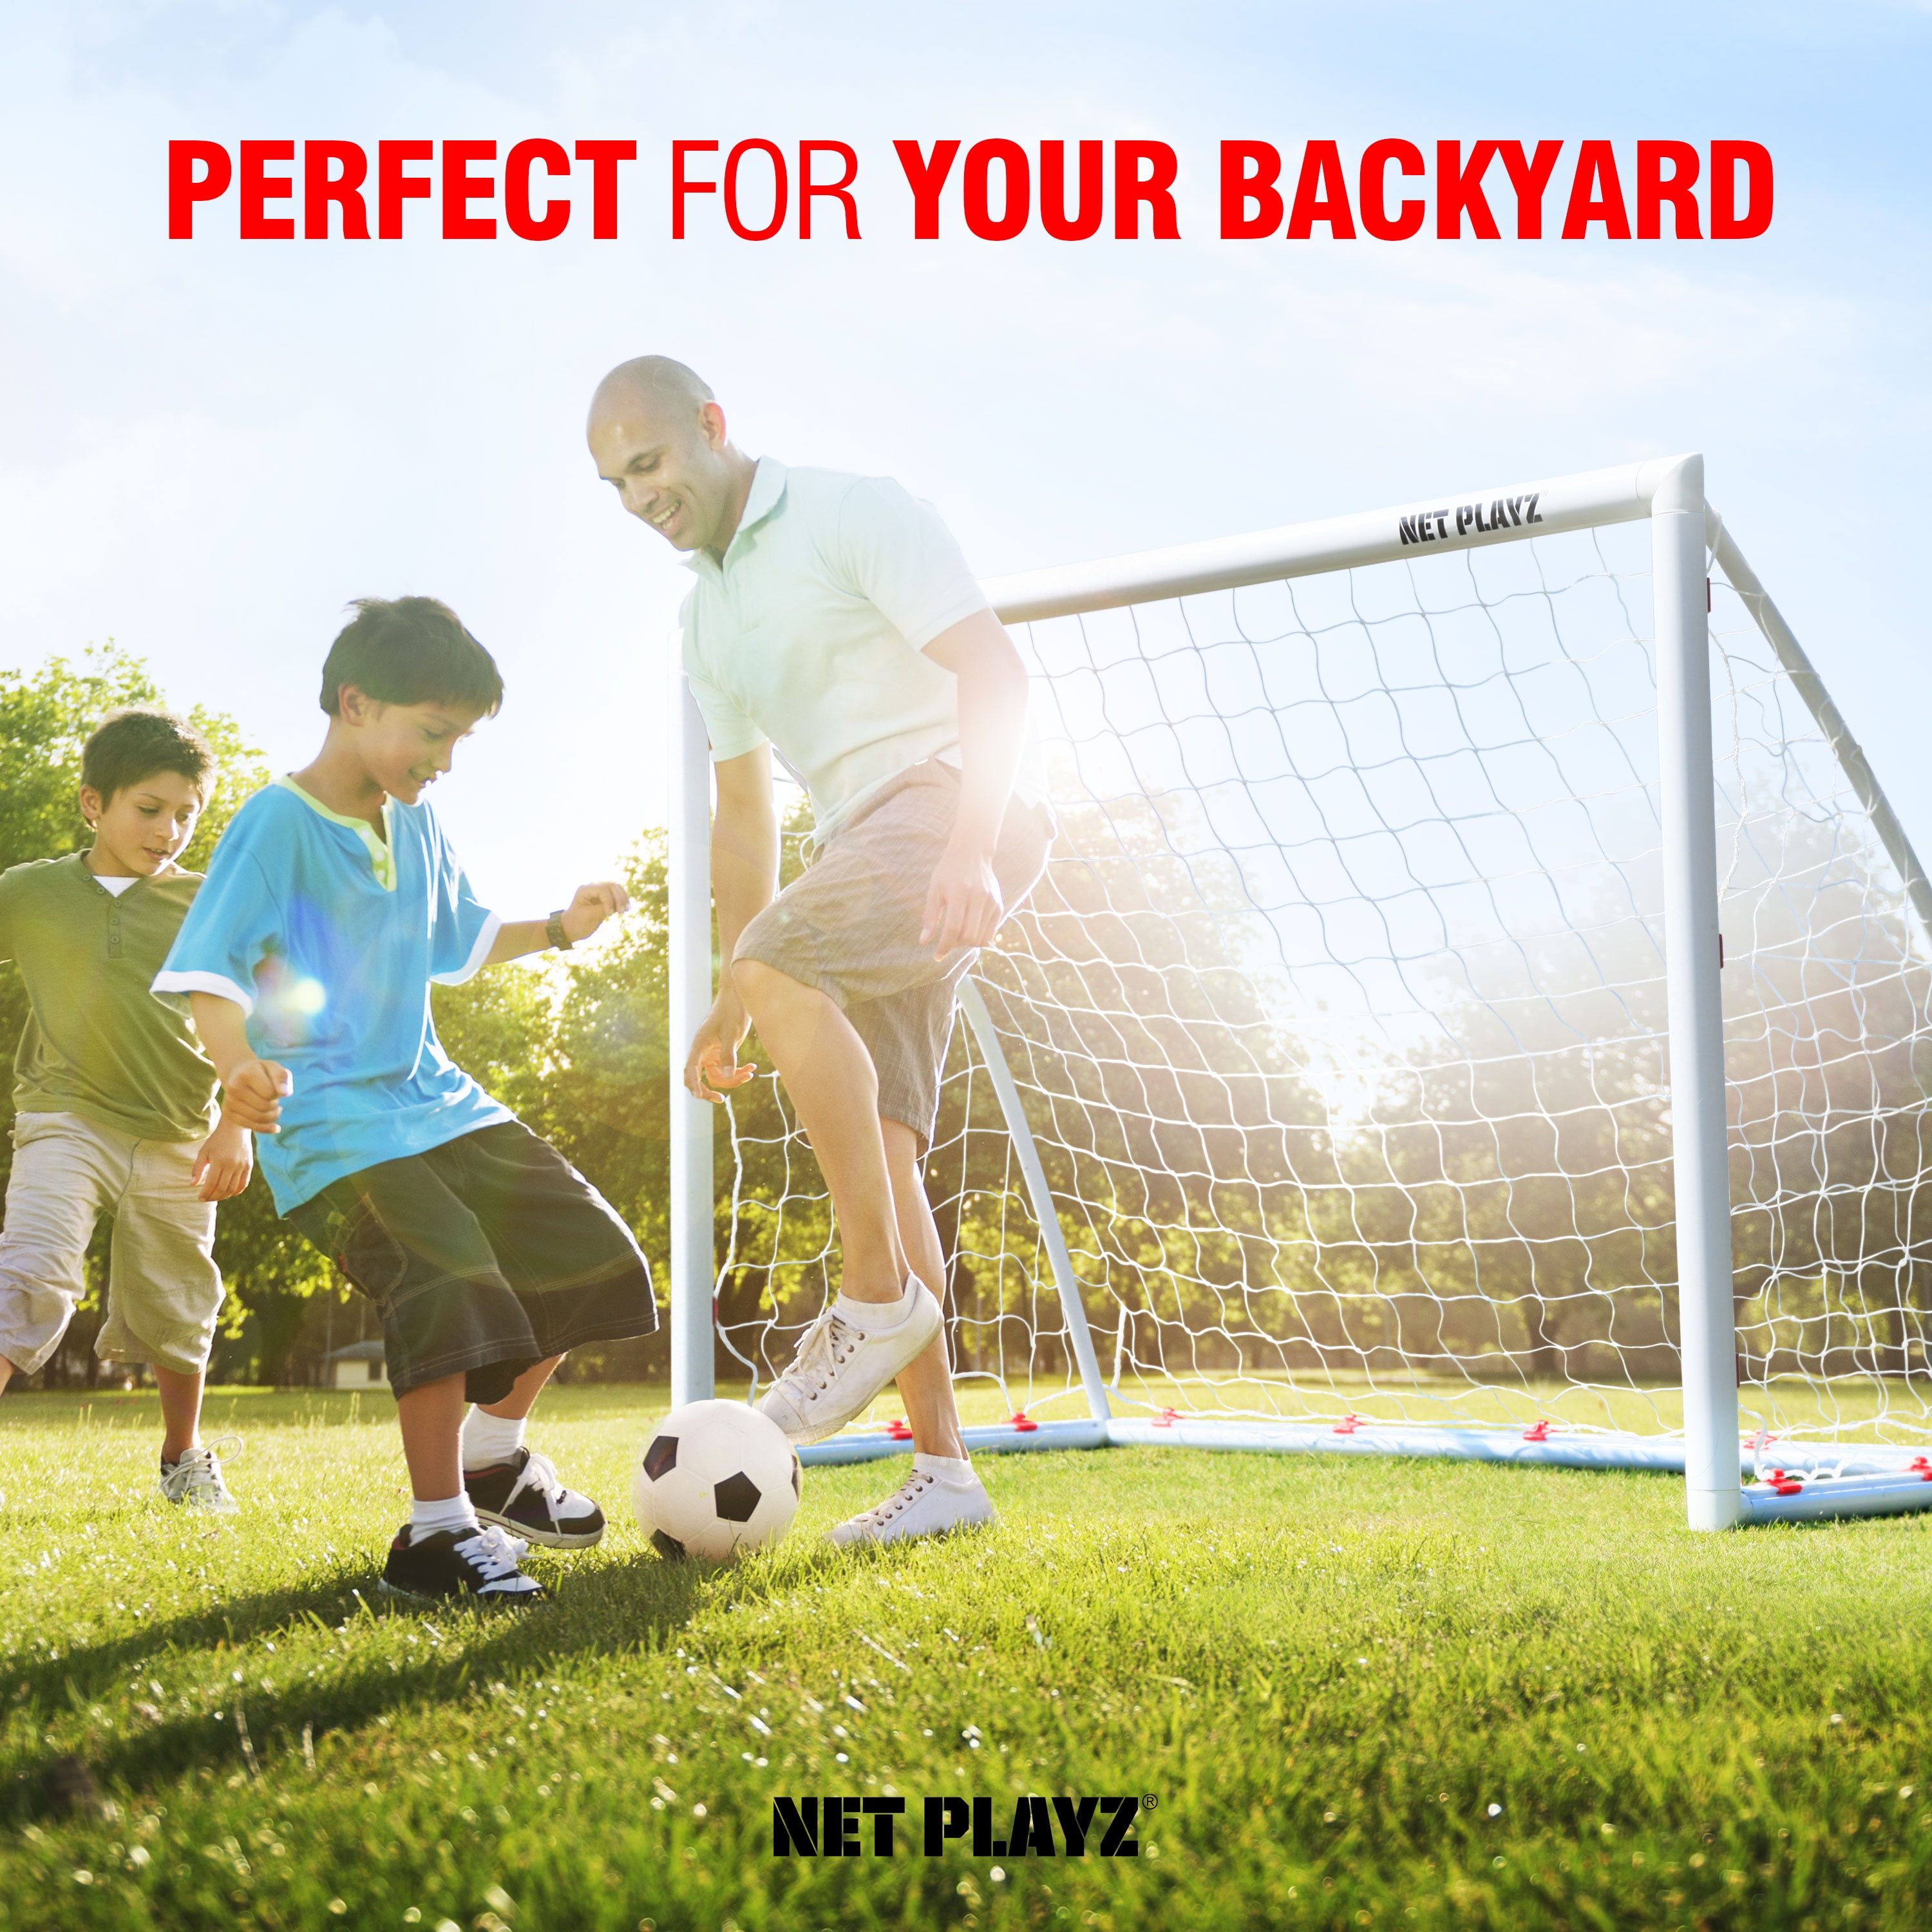 6x4Ft High-Strength NOS32240 NET PLAYZ Backyard Soccer Goal Soccer Net White, Fast Set-Up Weatherproof 